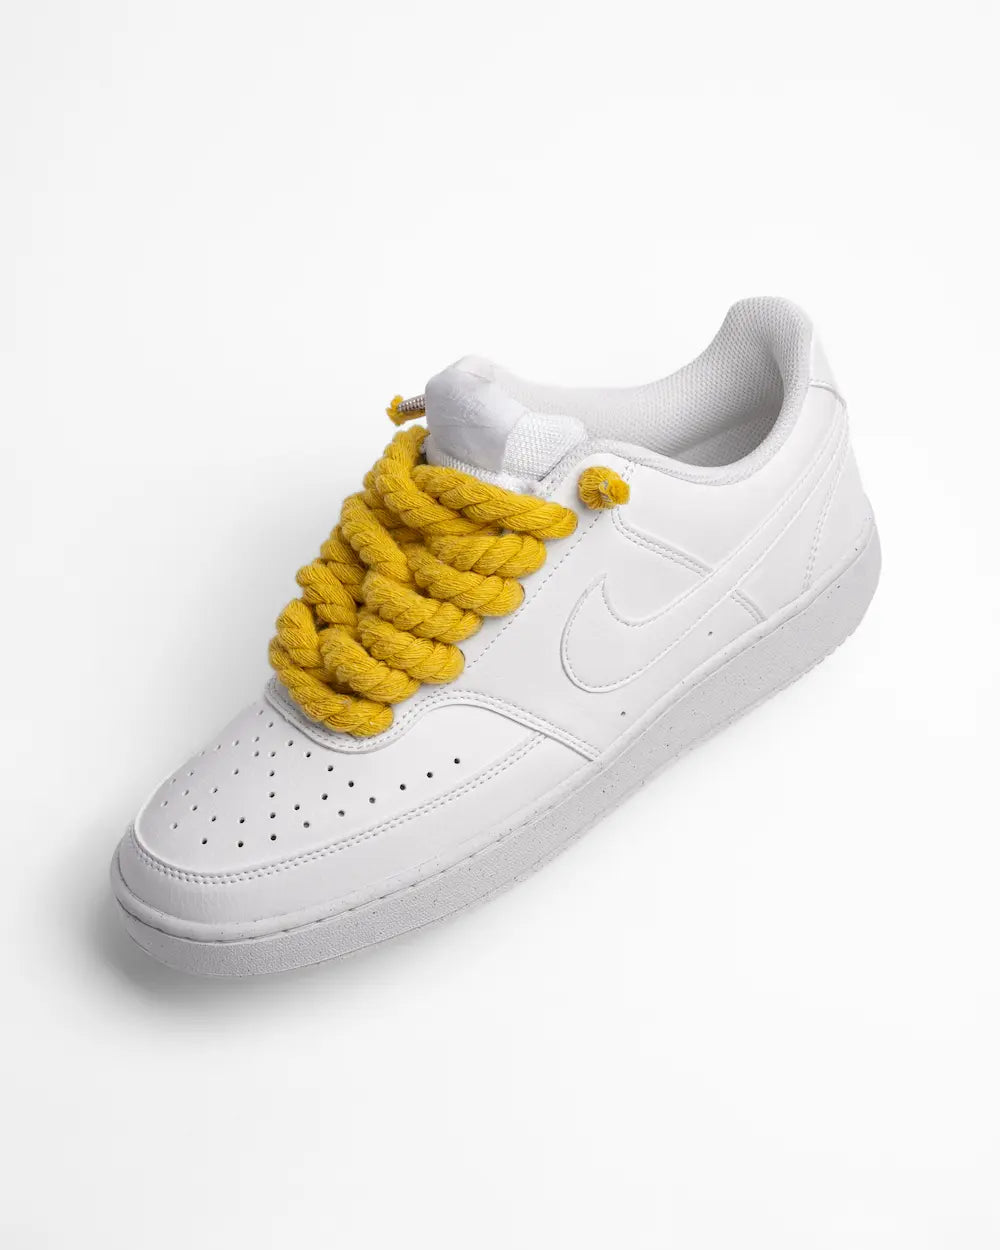 Nike Court Vision personalizzata con lacci in corda gialli